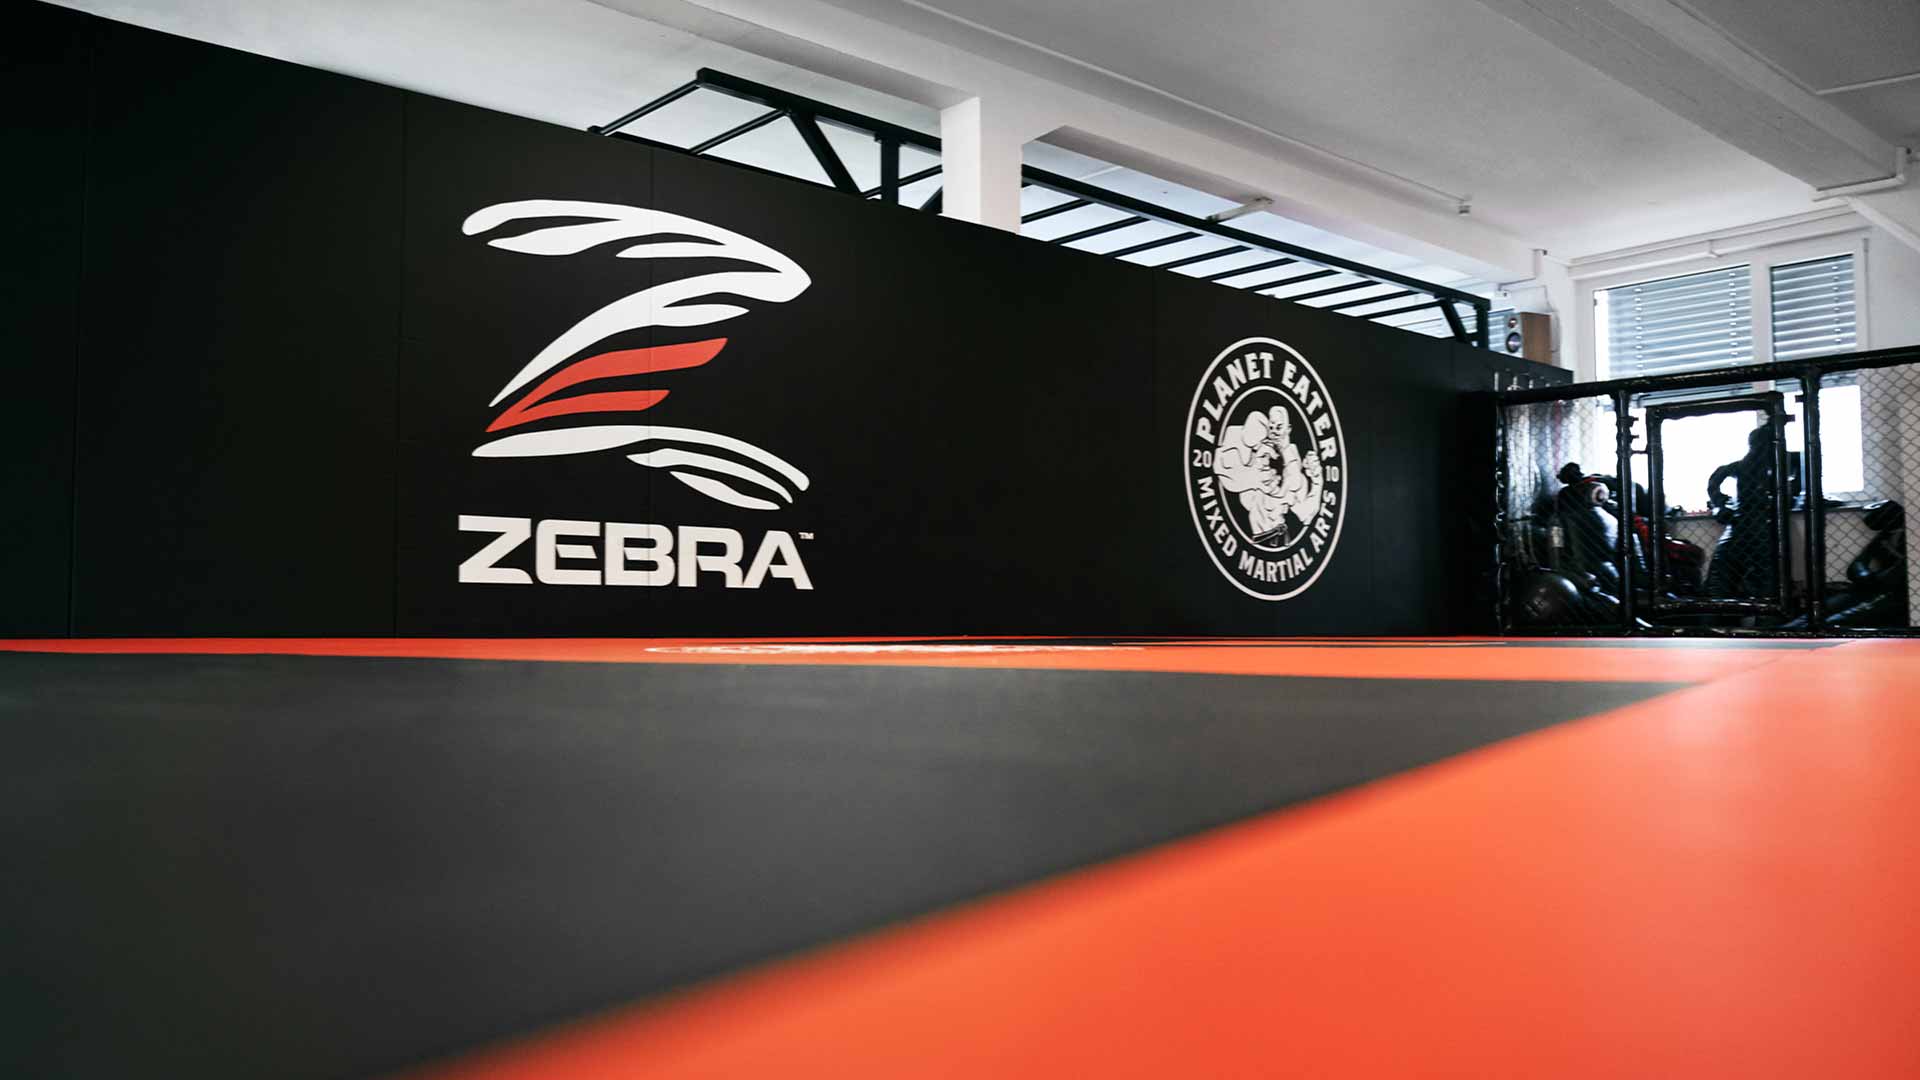 MMA Gym ausgestattet mit schwarzen und roten ZEBRA Smooth Series Matten